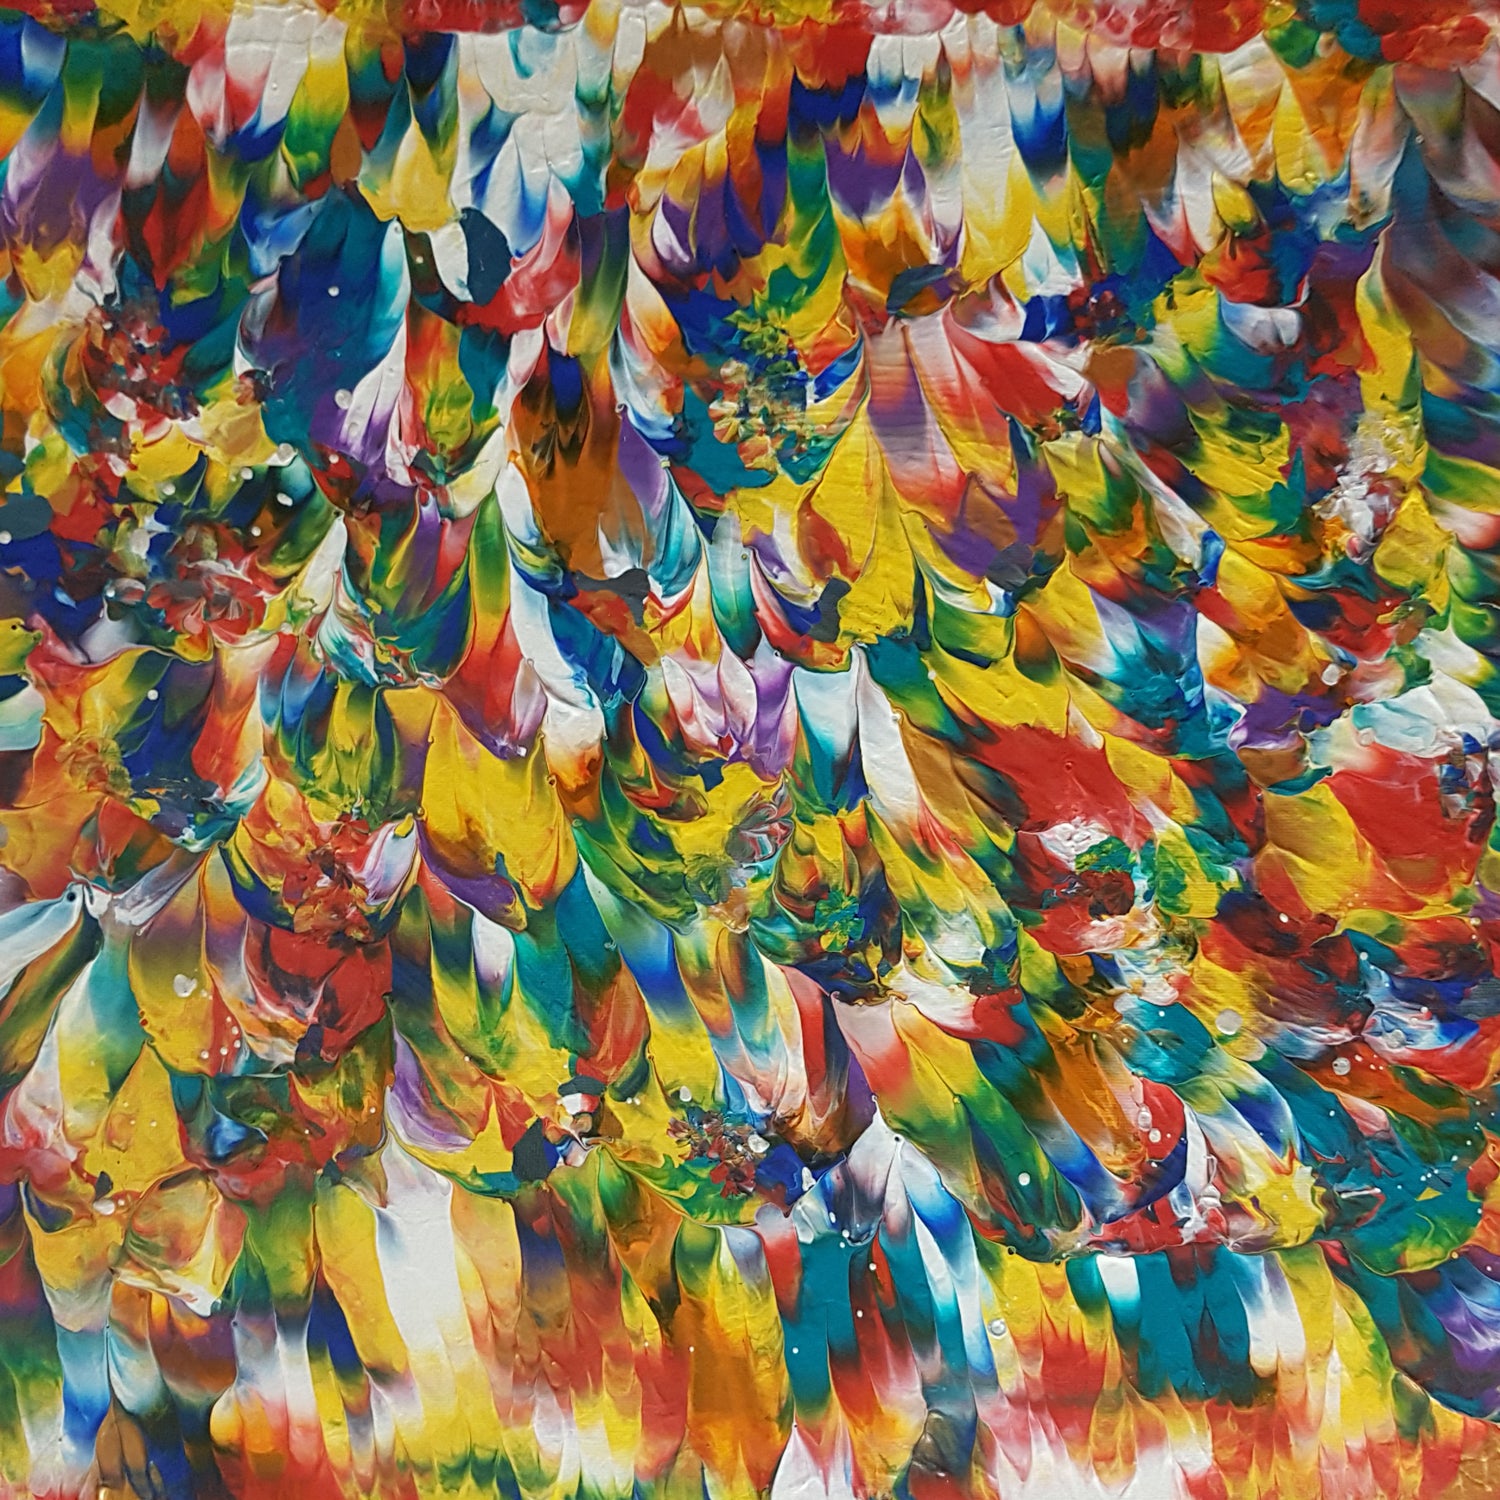 Heart-of-the-Black-Mamba-Alexandra-Romano-Art-Vibrant-Colourful-Paintings-Toronto-Abstract-Gallery